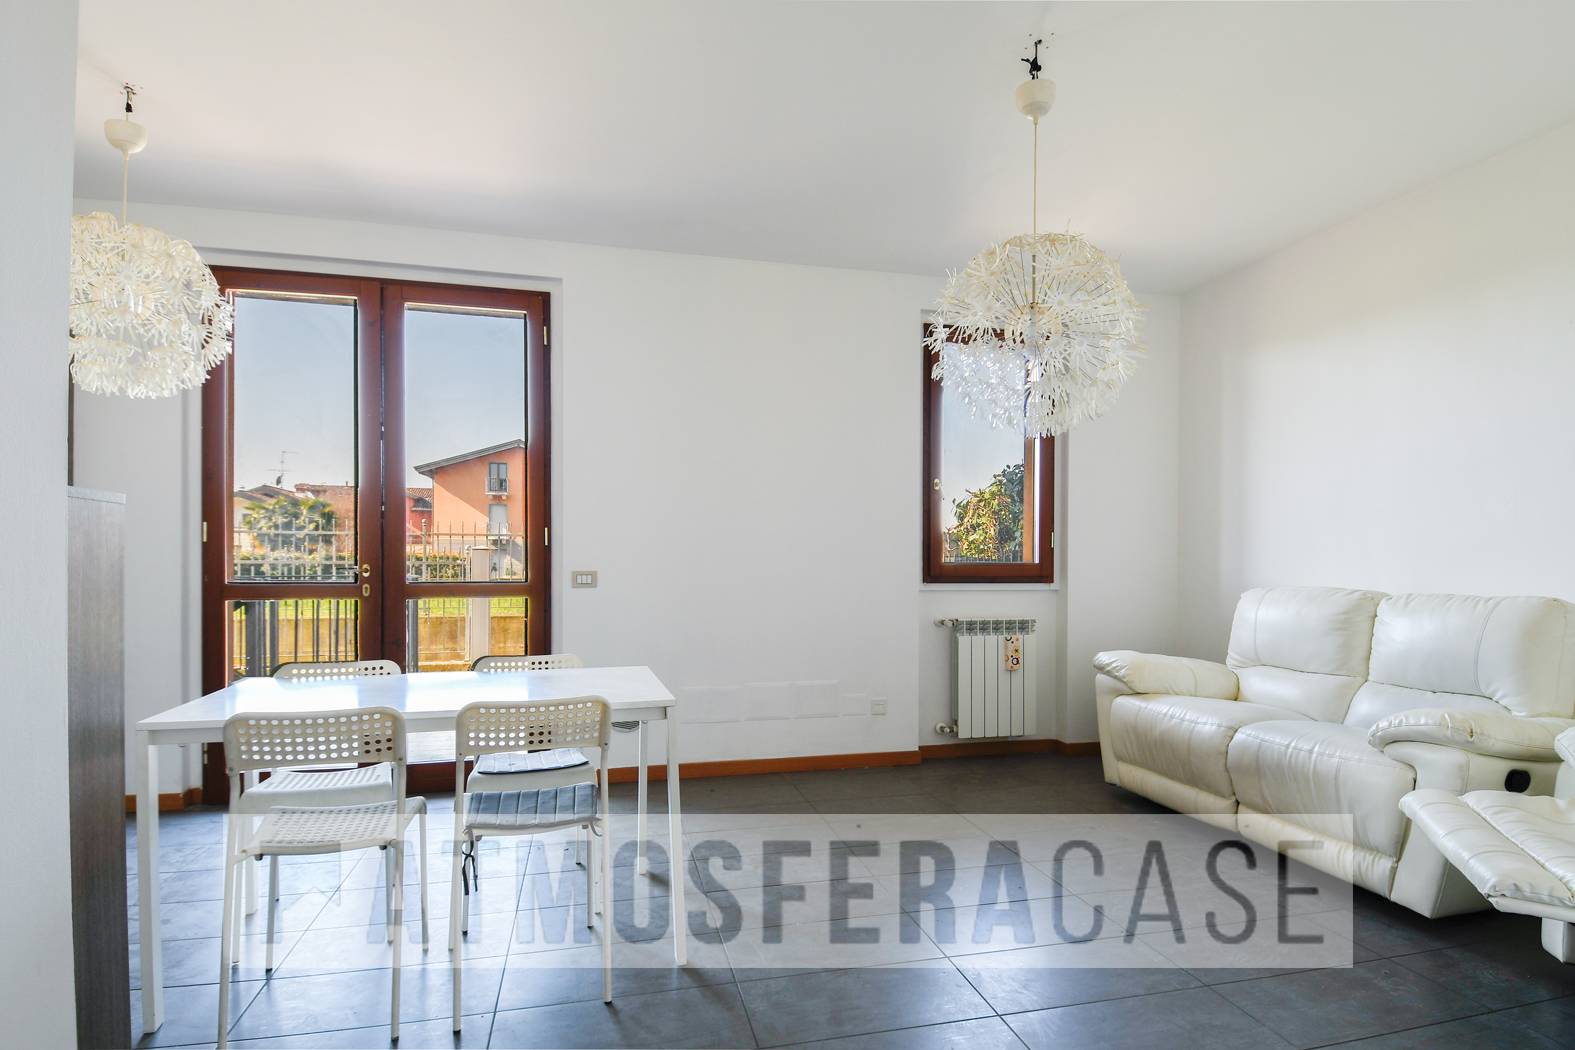 Appartamento in vendita a Comun Nuovo, 3 locali, prezzo € 175.000 | CambioCasa.it